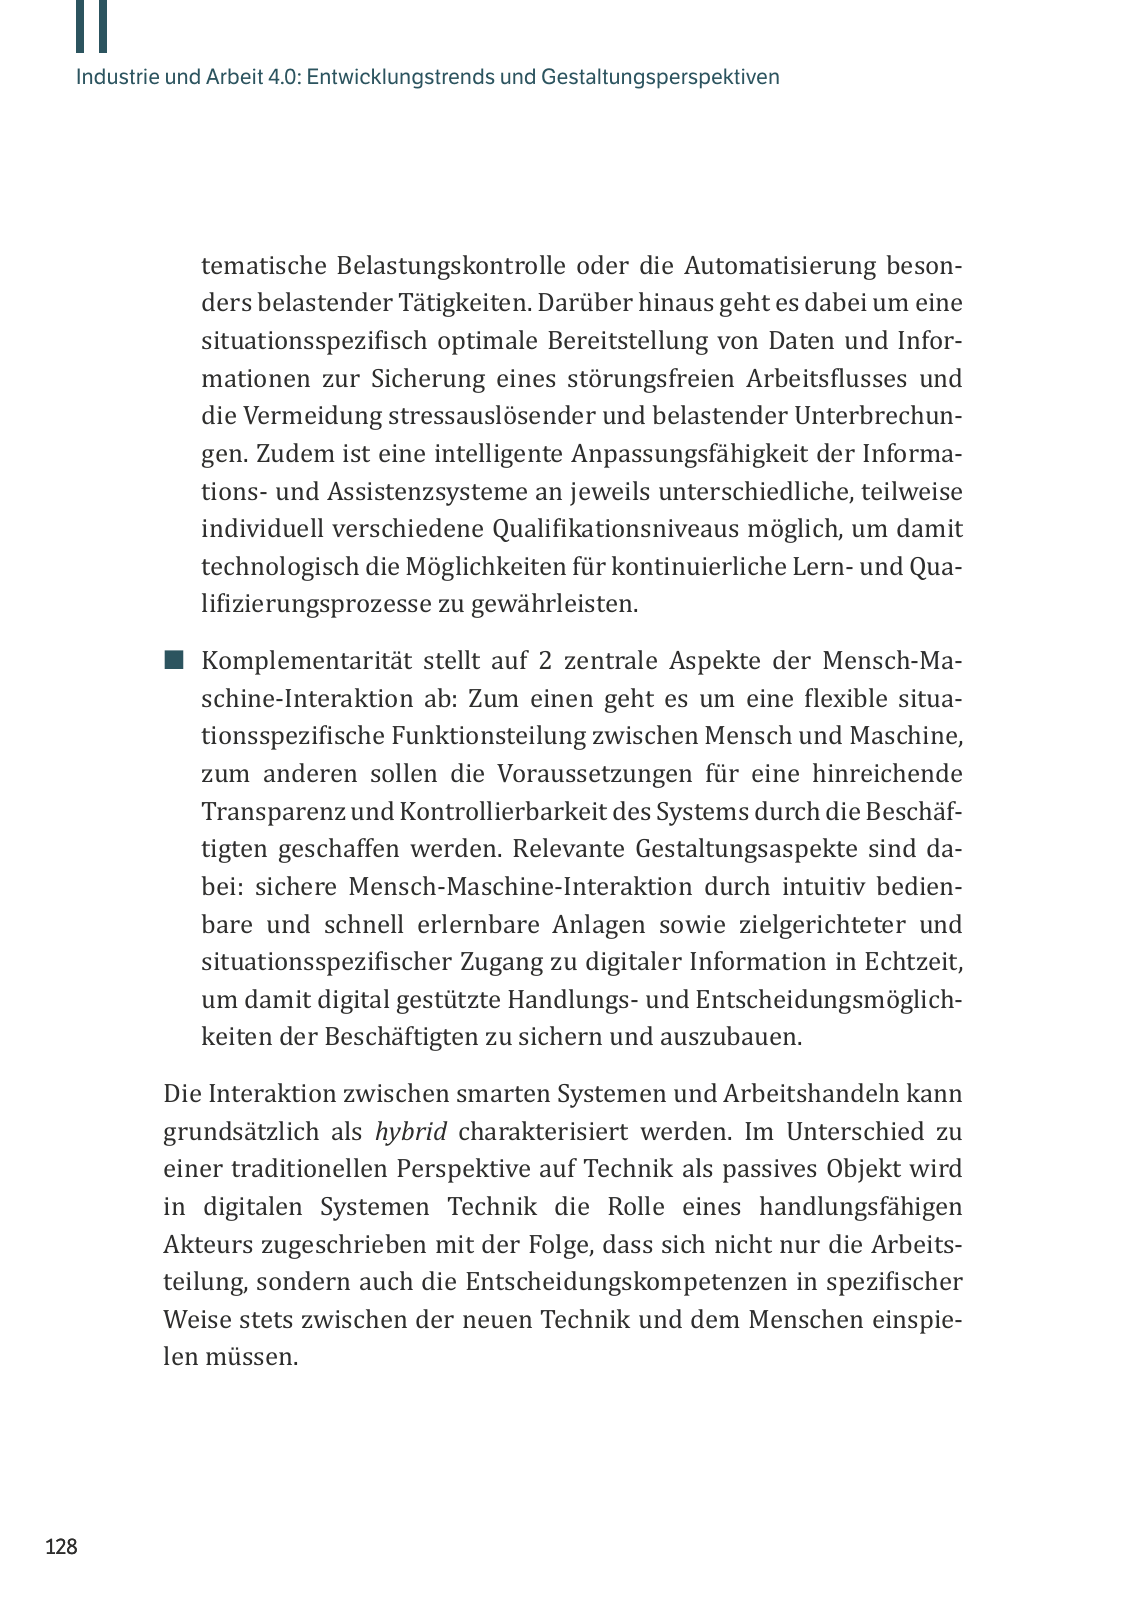 Vorschau M. Vassiliadis // Digitalisierung und Industrie 4.0 Seite 128